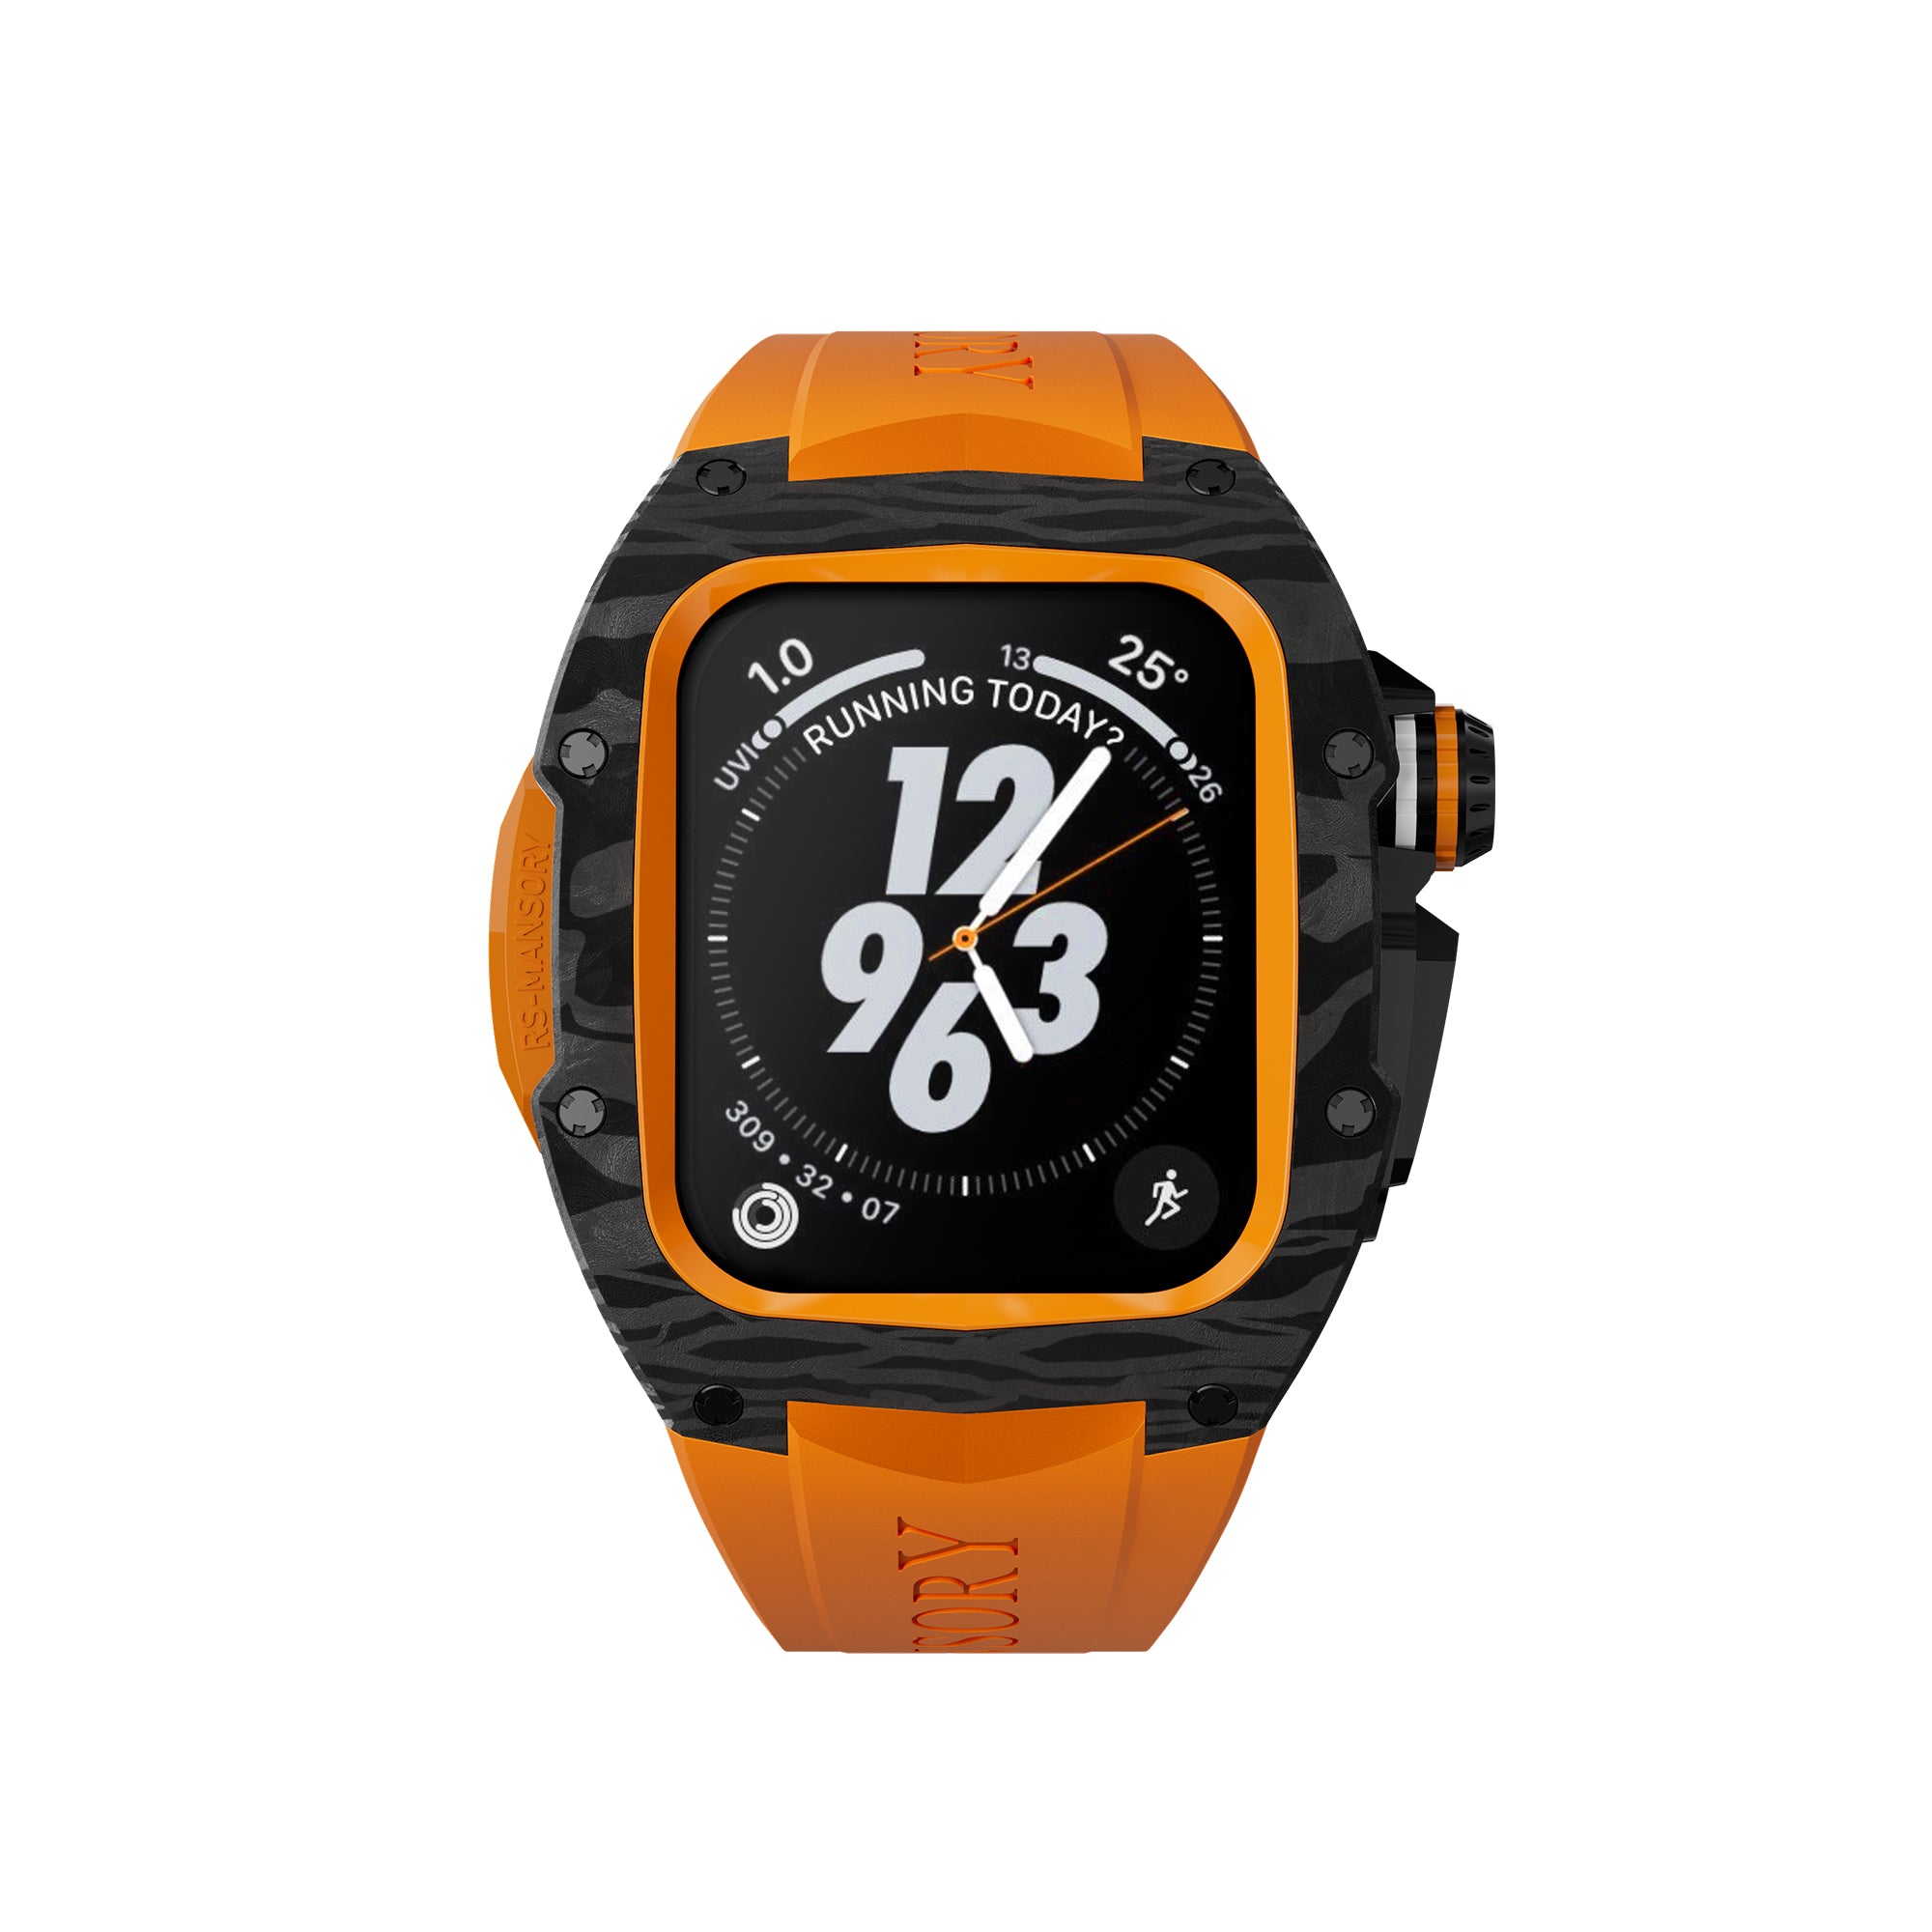 Shop latest trending Orange color Golden Concept Apple Watch Cases